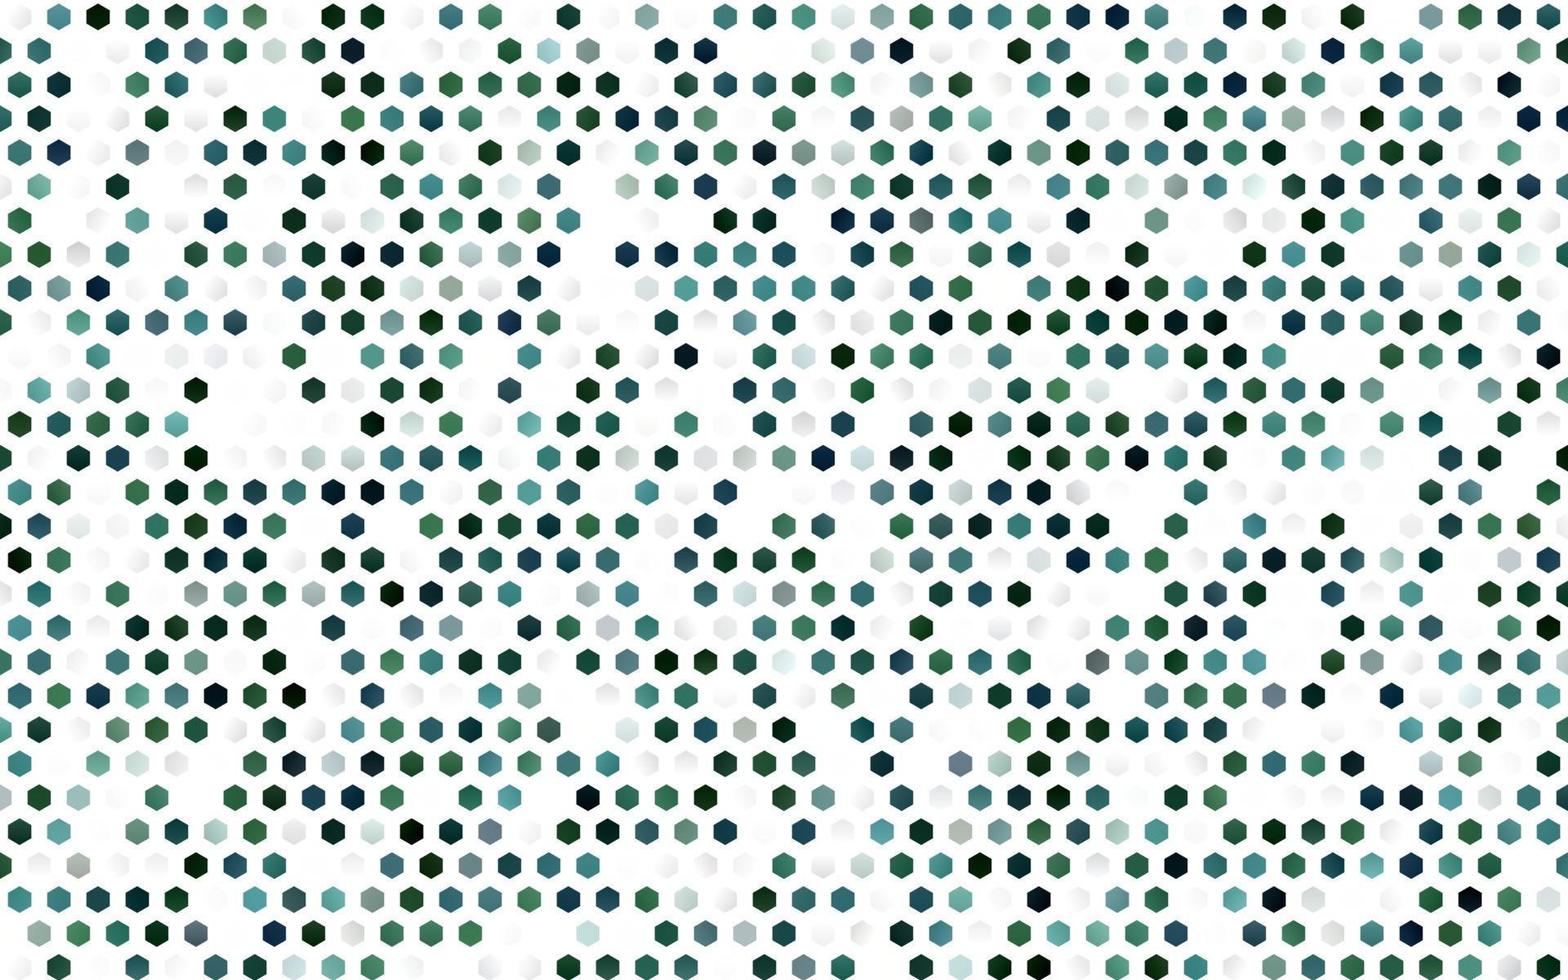 texture de vecteur vert foncé avec des hexagones colorés.